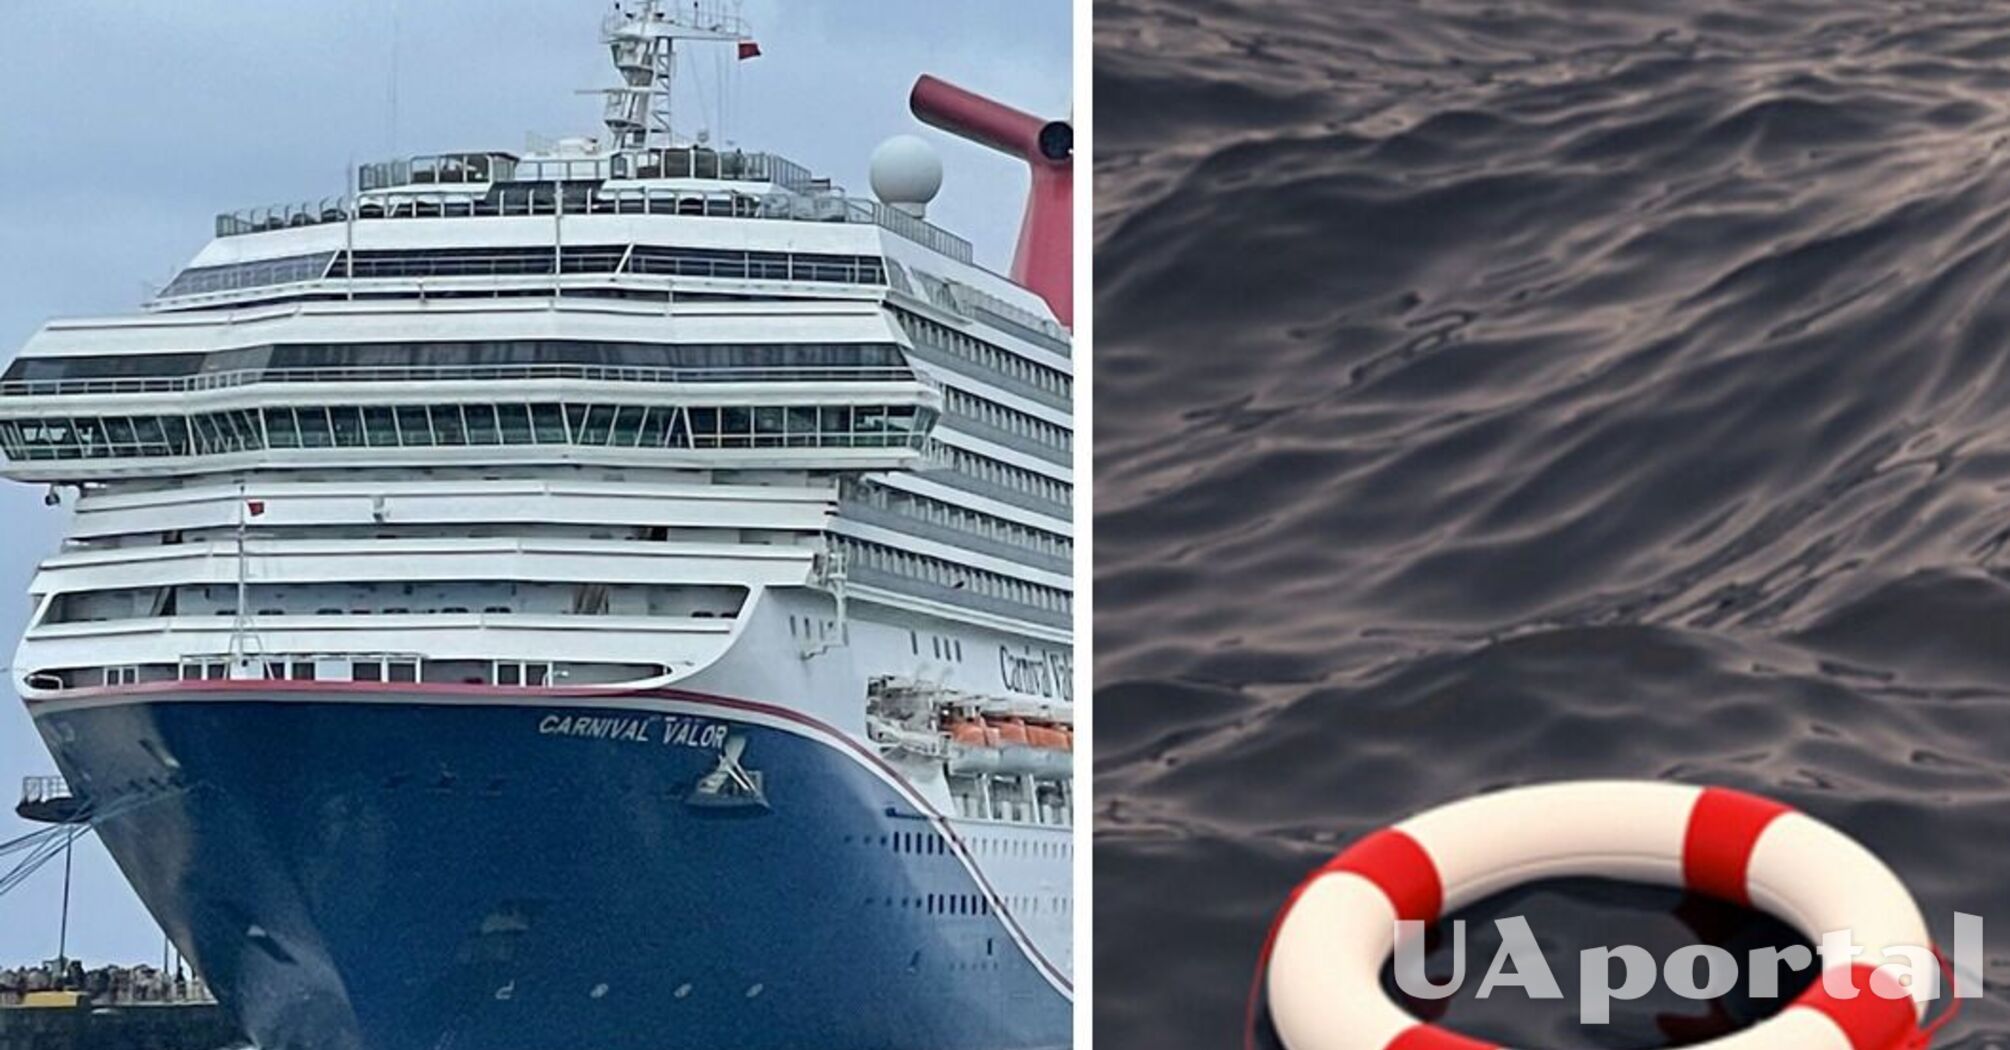 Выпал из круизного лайнера: в США спасли туриста, плававшего в воде 15 часов (видео)